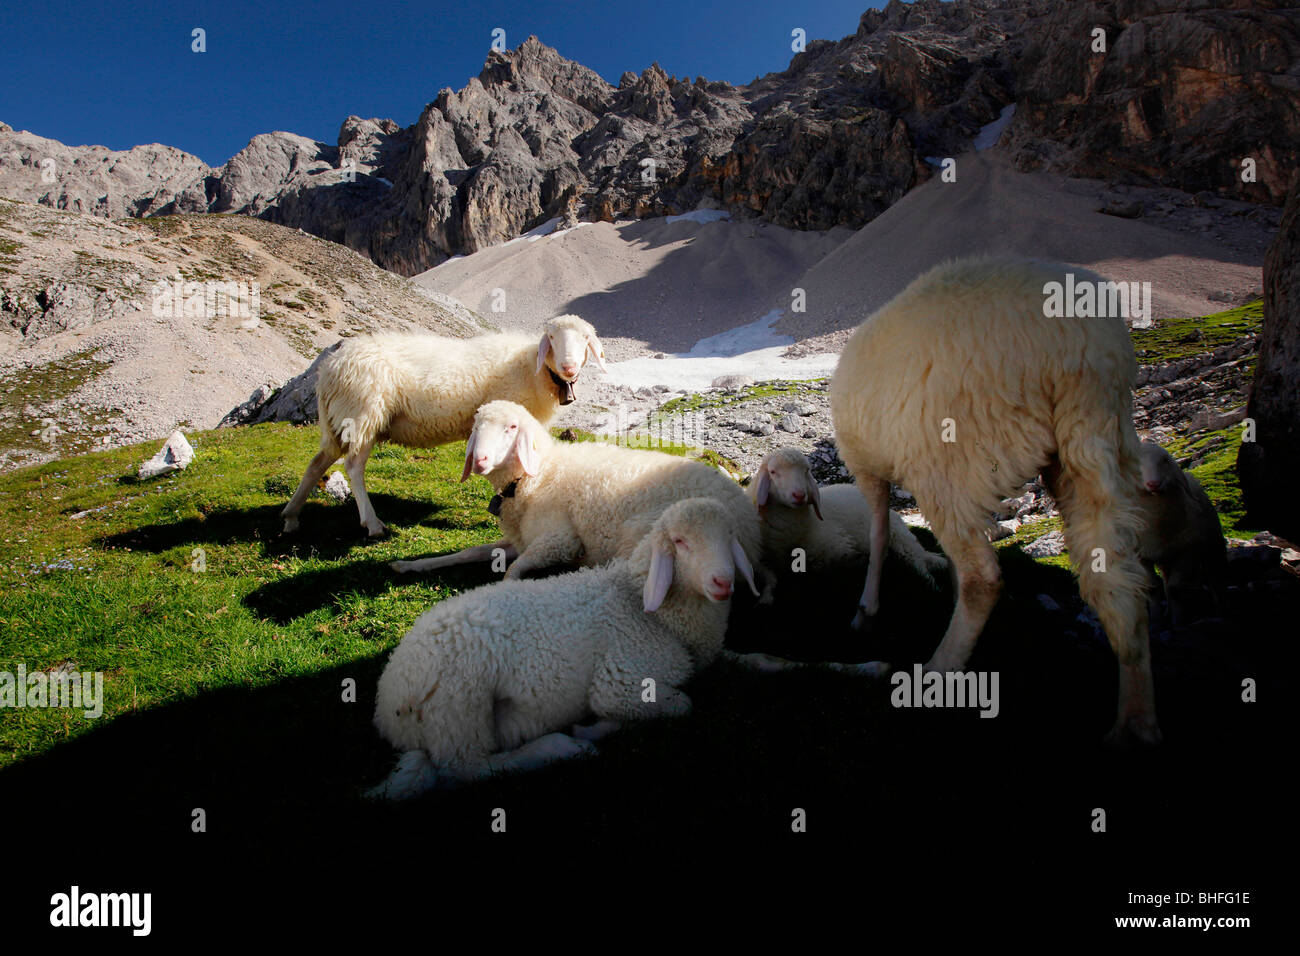 Sheep on pasture, Upper Rein Valley, near Garmisch, Bavaria, Germany Stock Photo